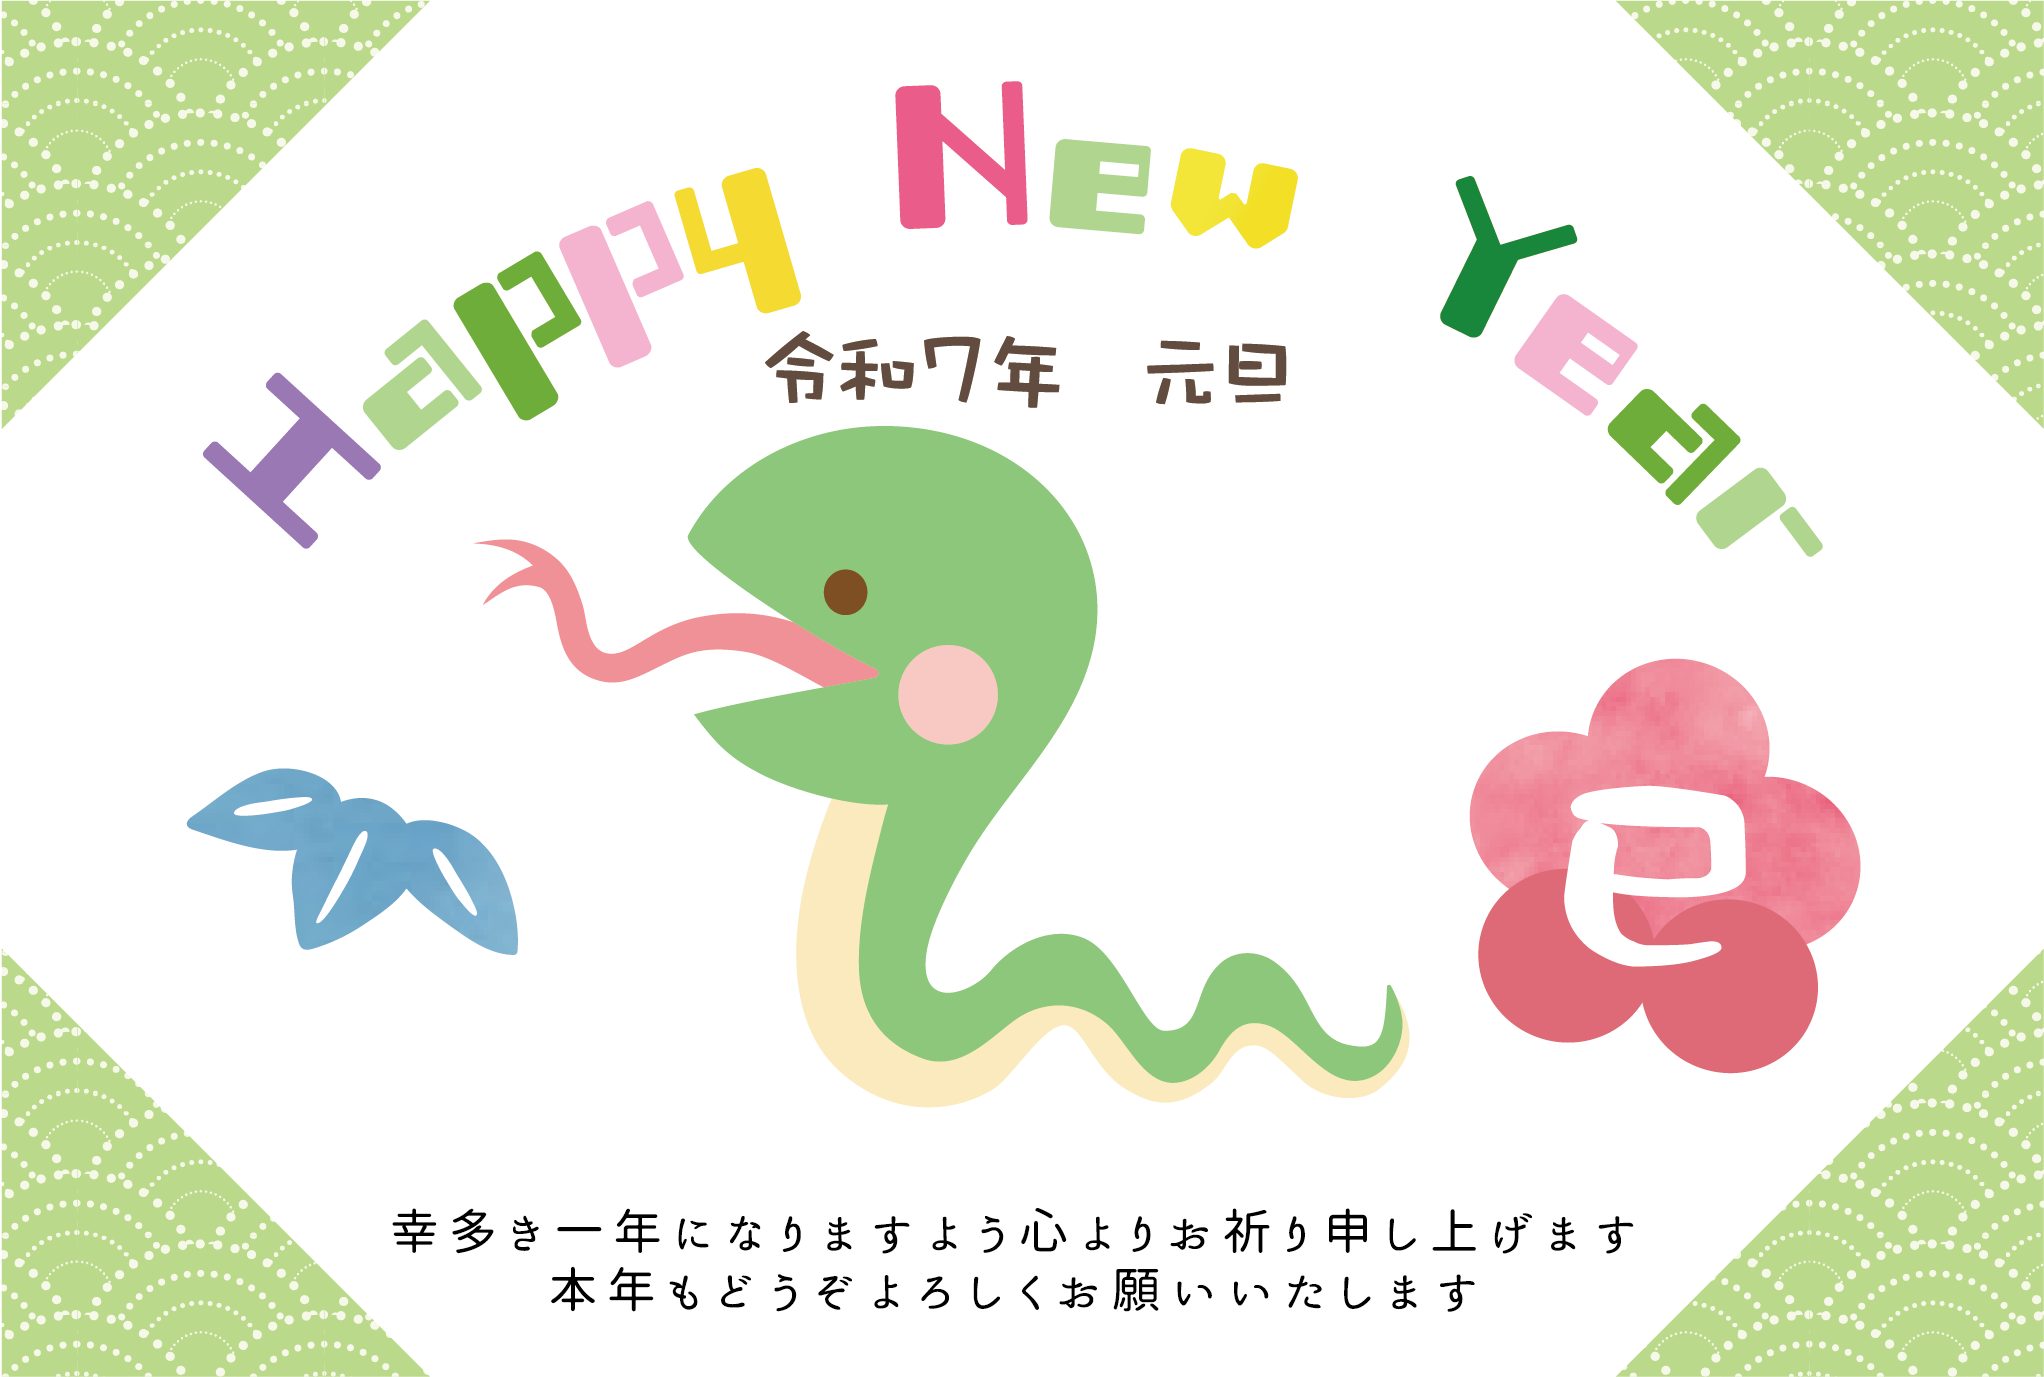 かわいい蛇と「Happy New Year」でデザインした巳年の年賀状テンプレート